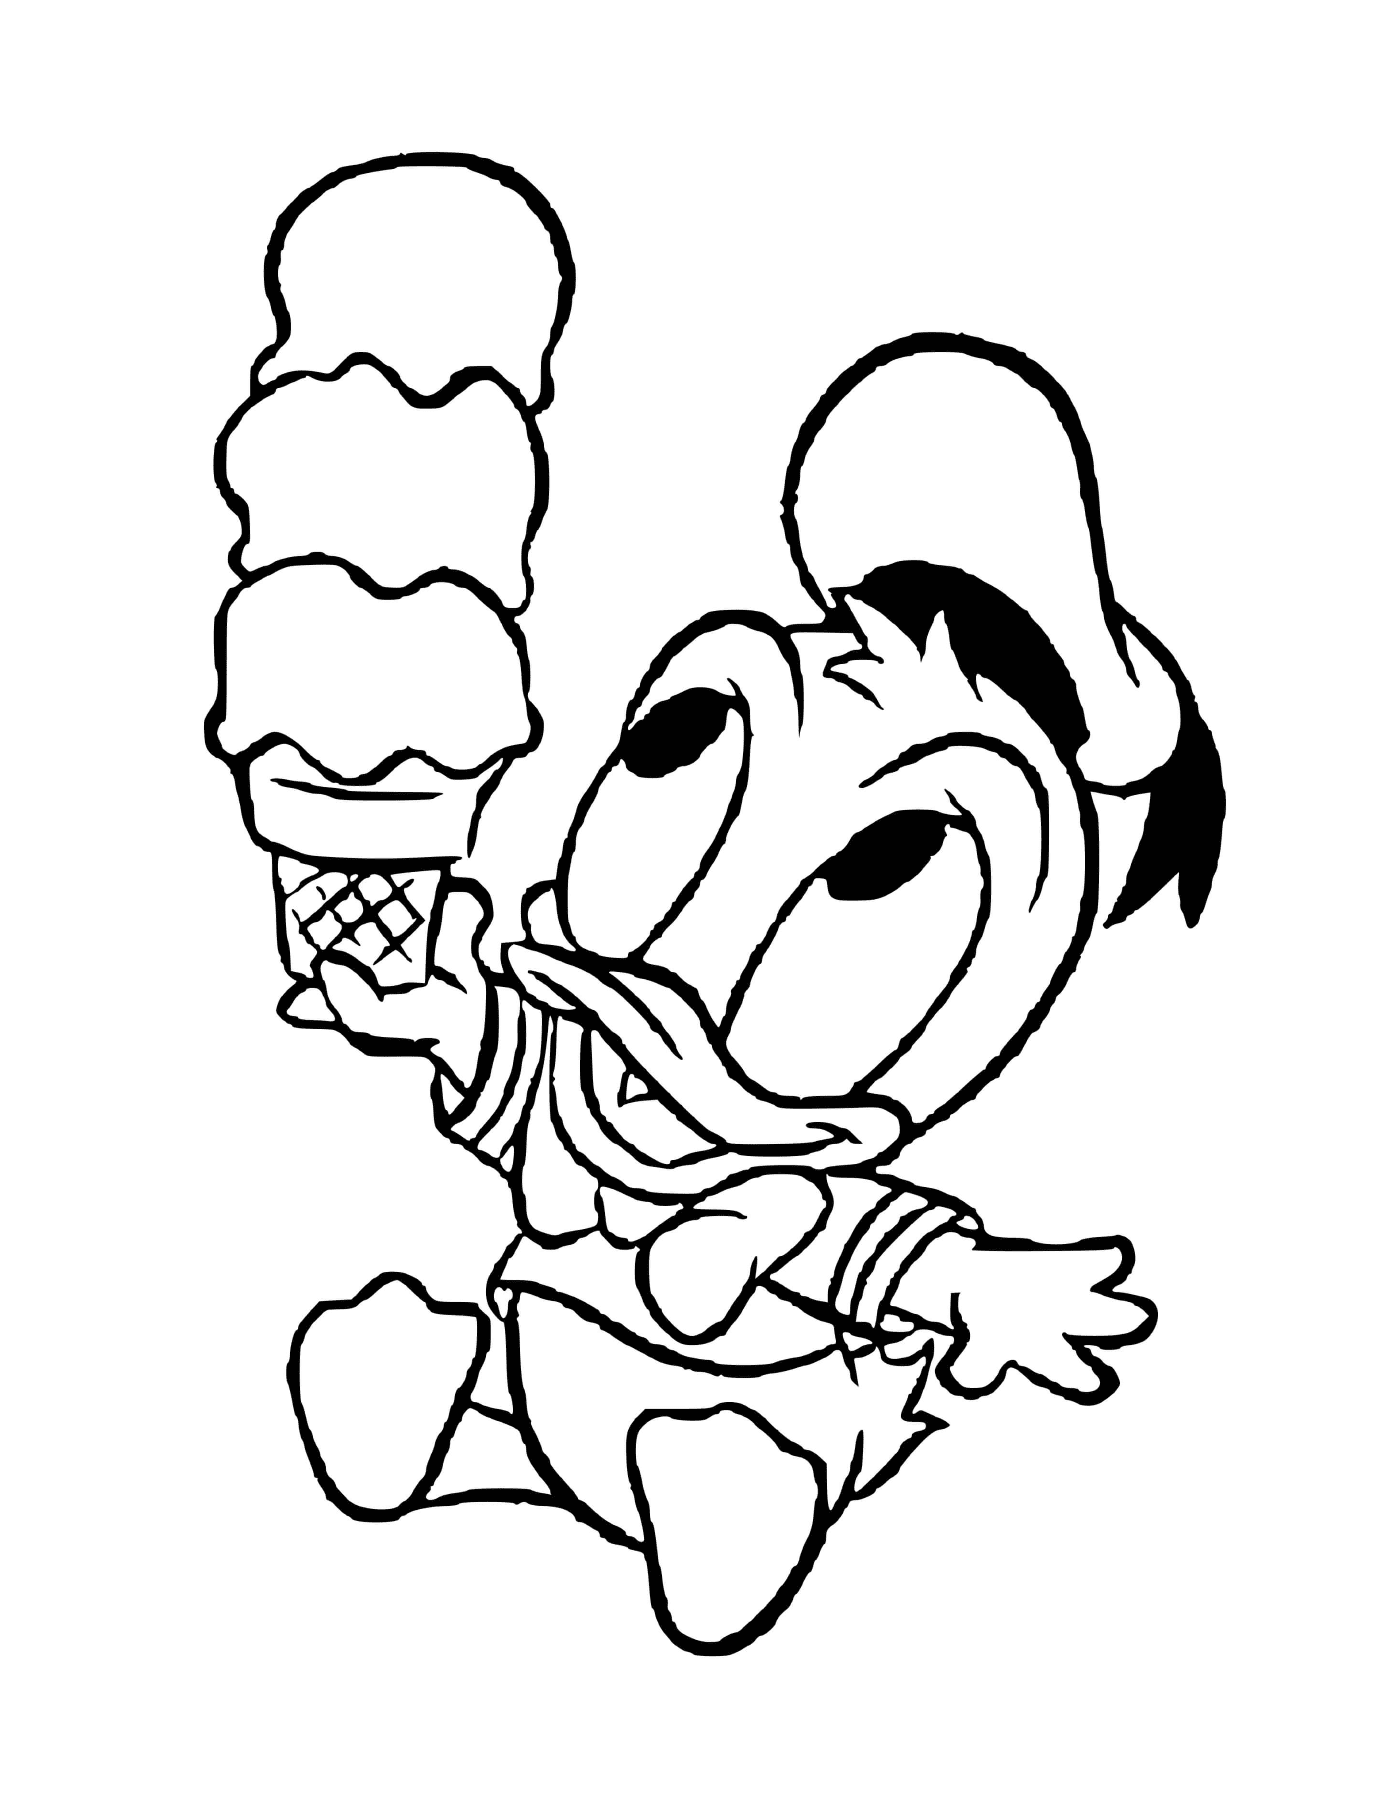   Donald Duck bébé adore la crème glacée 